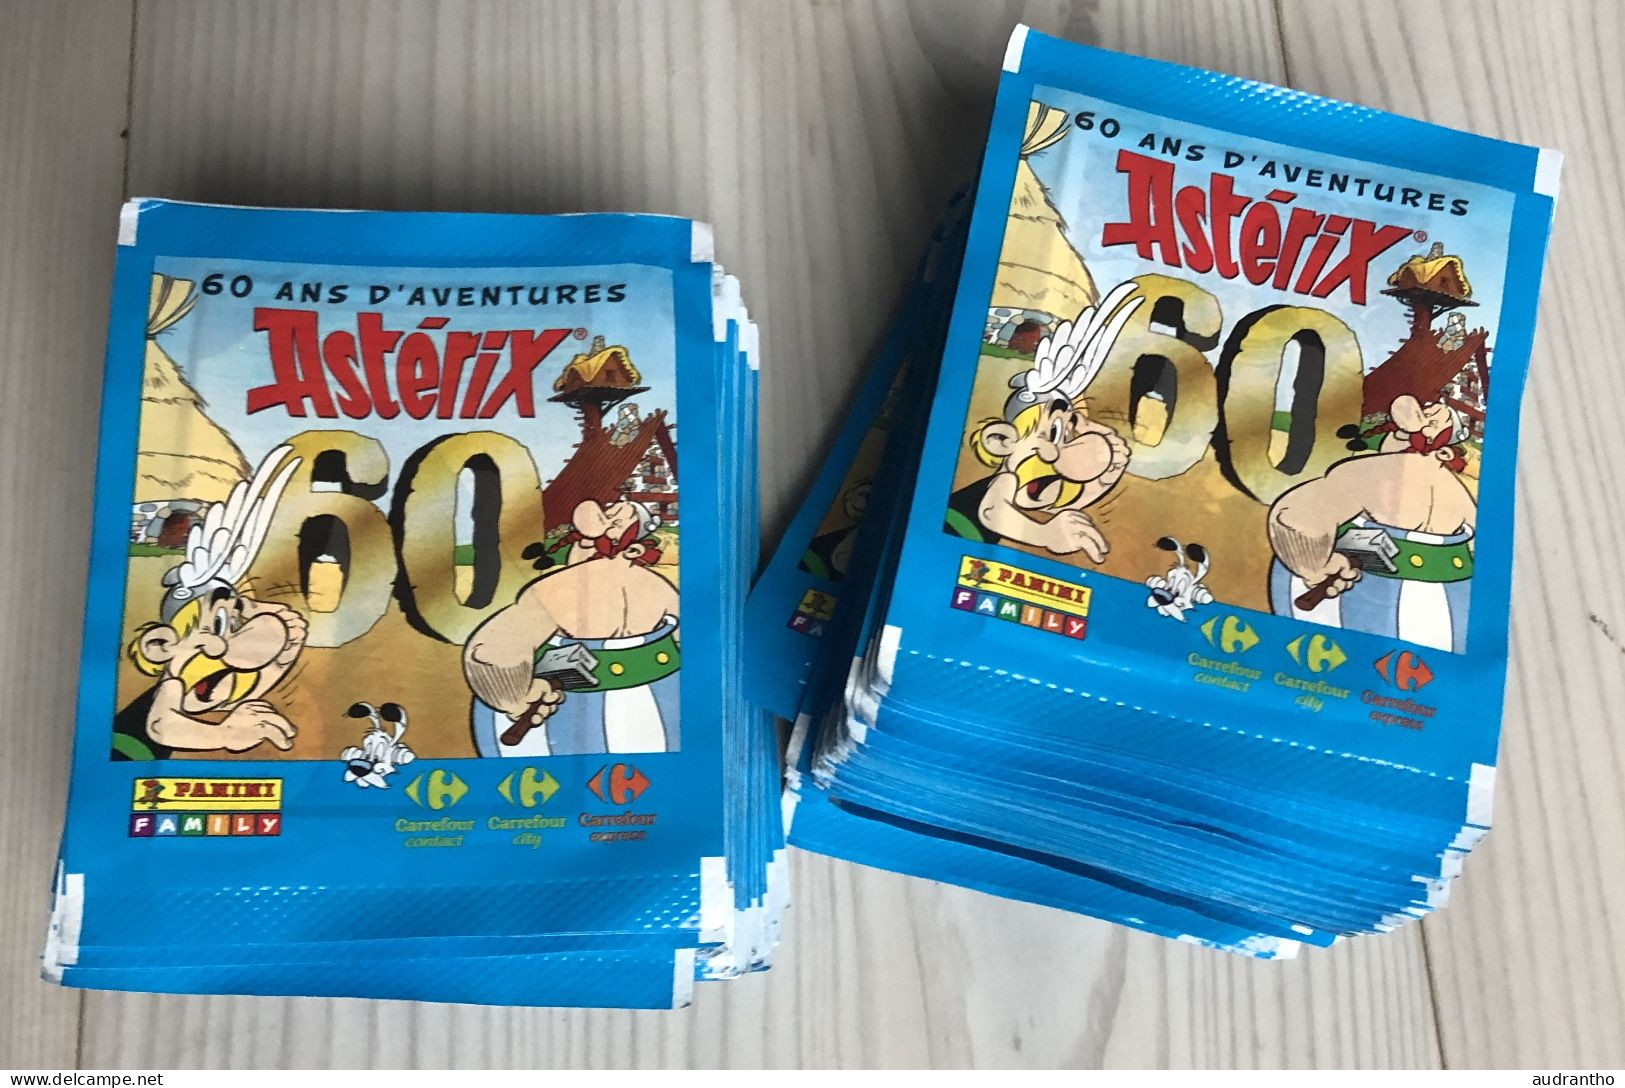 100 Pochettes De Stickers PANINI - Astérix 60 Ans D'aventures - Carrefour - 300 Vignettes Autocollantes 2019 - Autocollants